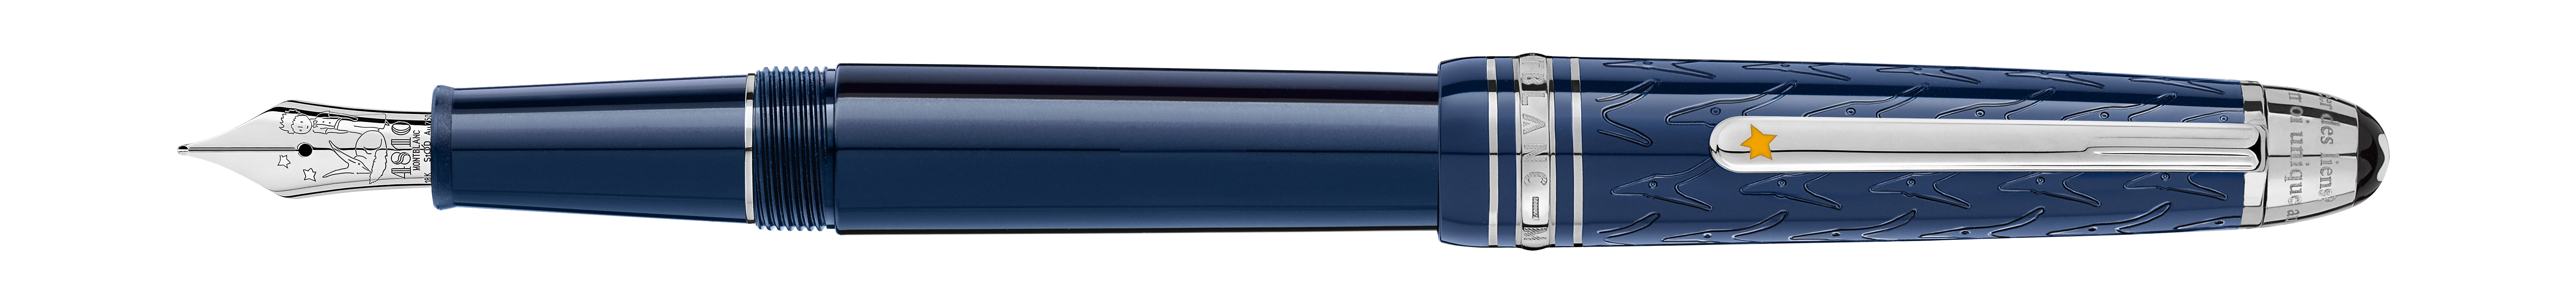 עט ציפורן של מותג היוקרה מון בלאן - MontBlanc - קולקציית "הנסיך הקטן". צילום: יח"צ 